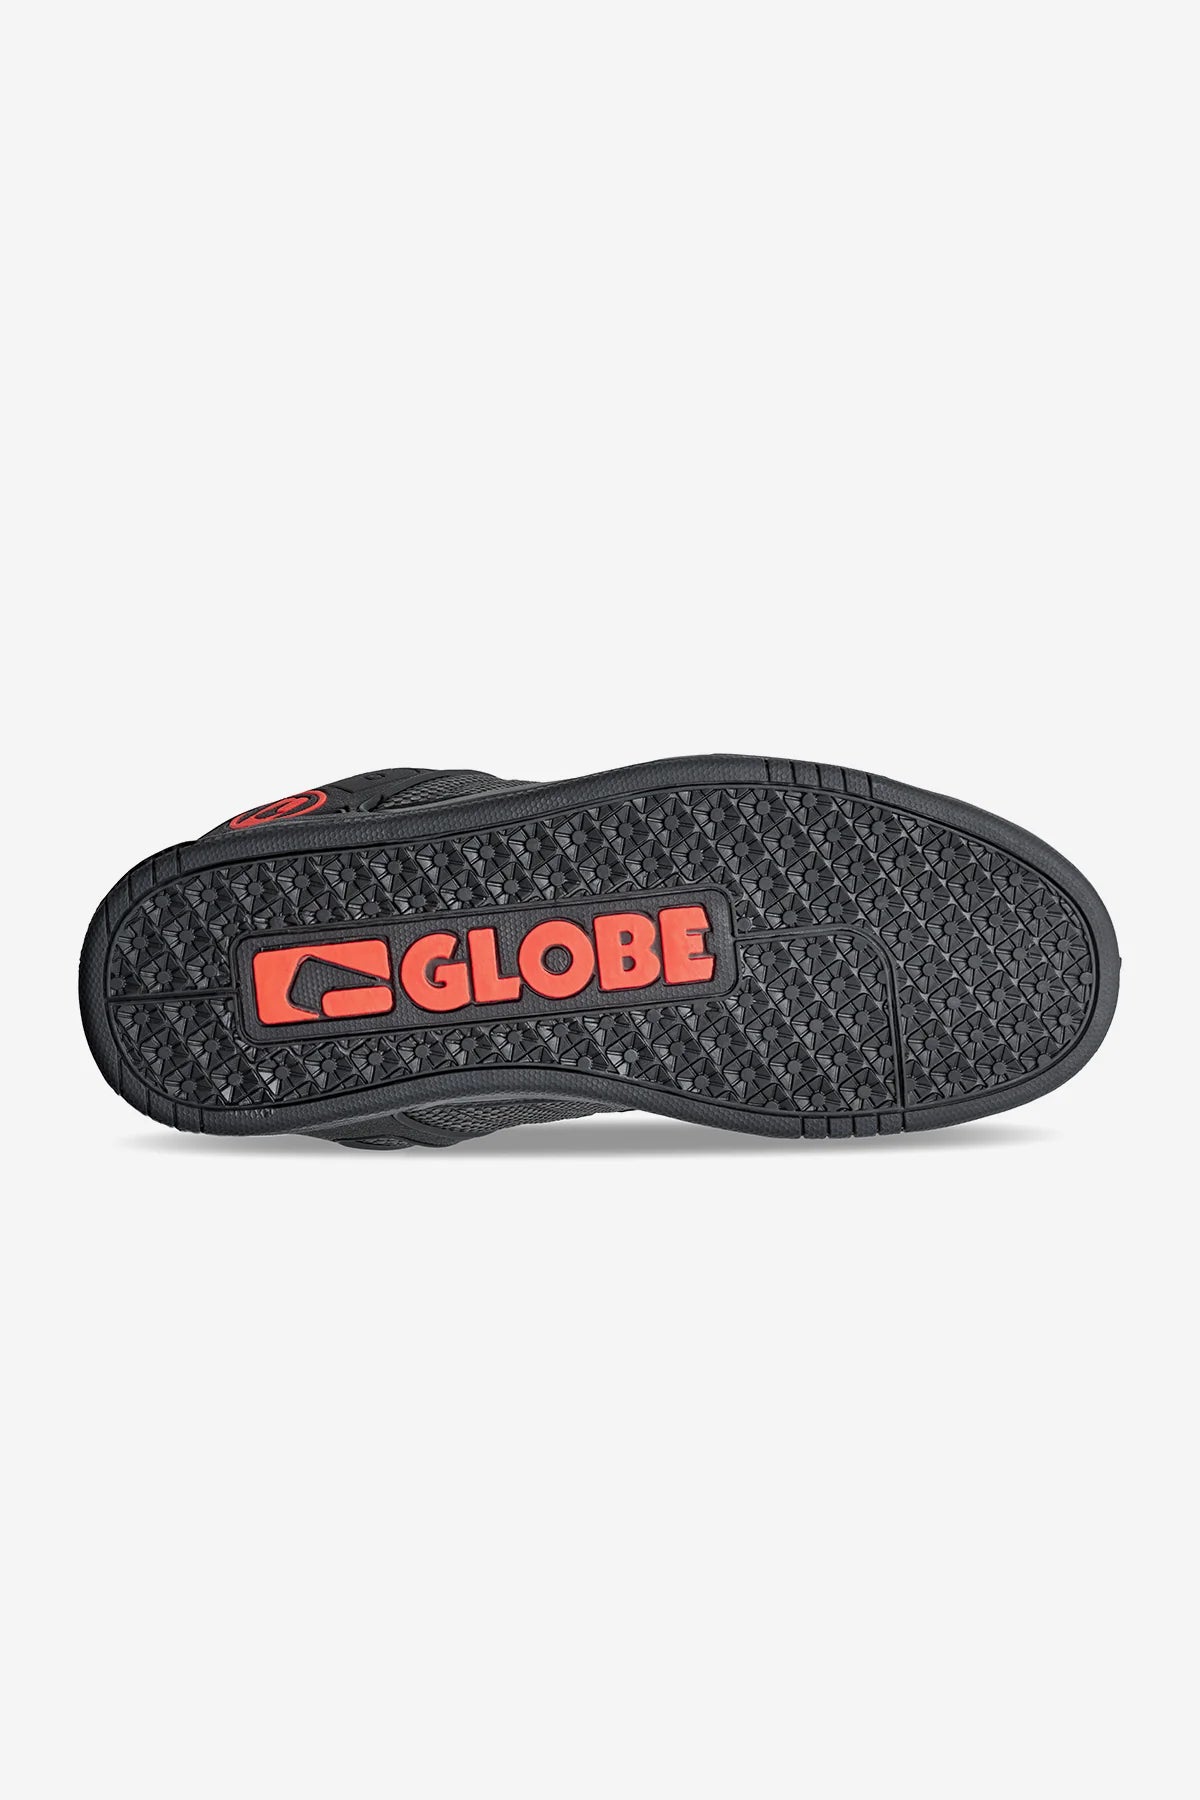 GLOBE Tilt Mens Low Shoe - Black/Snake